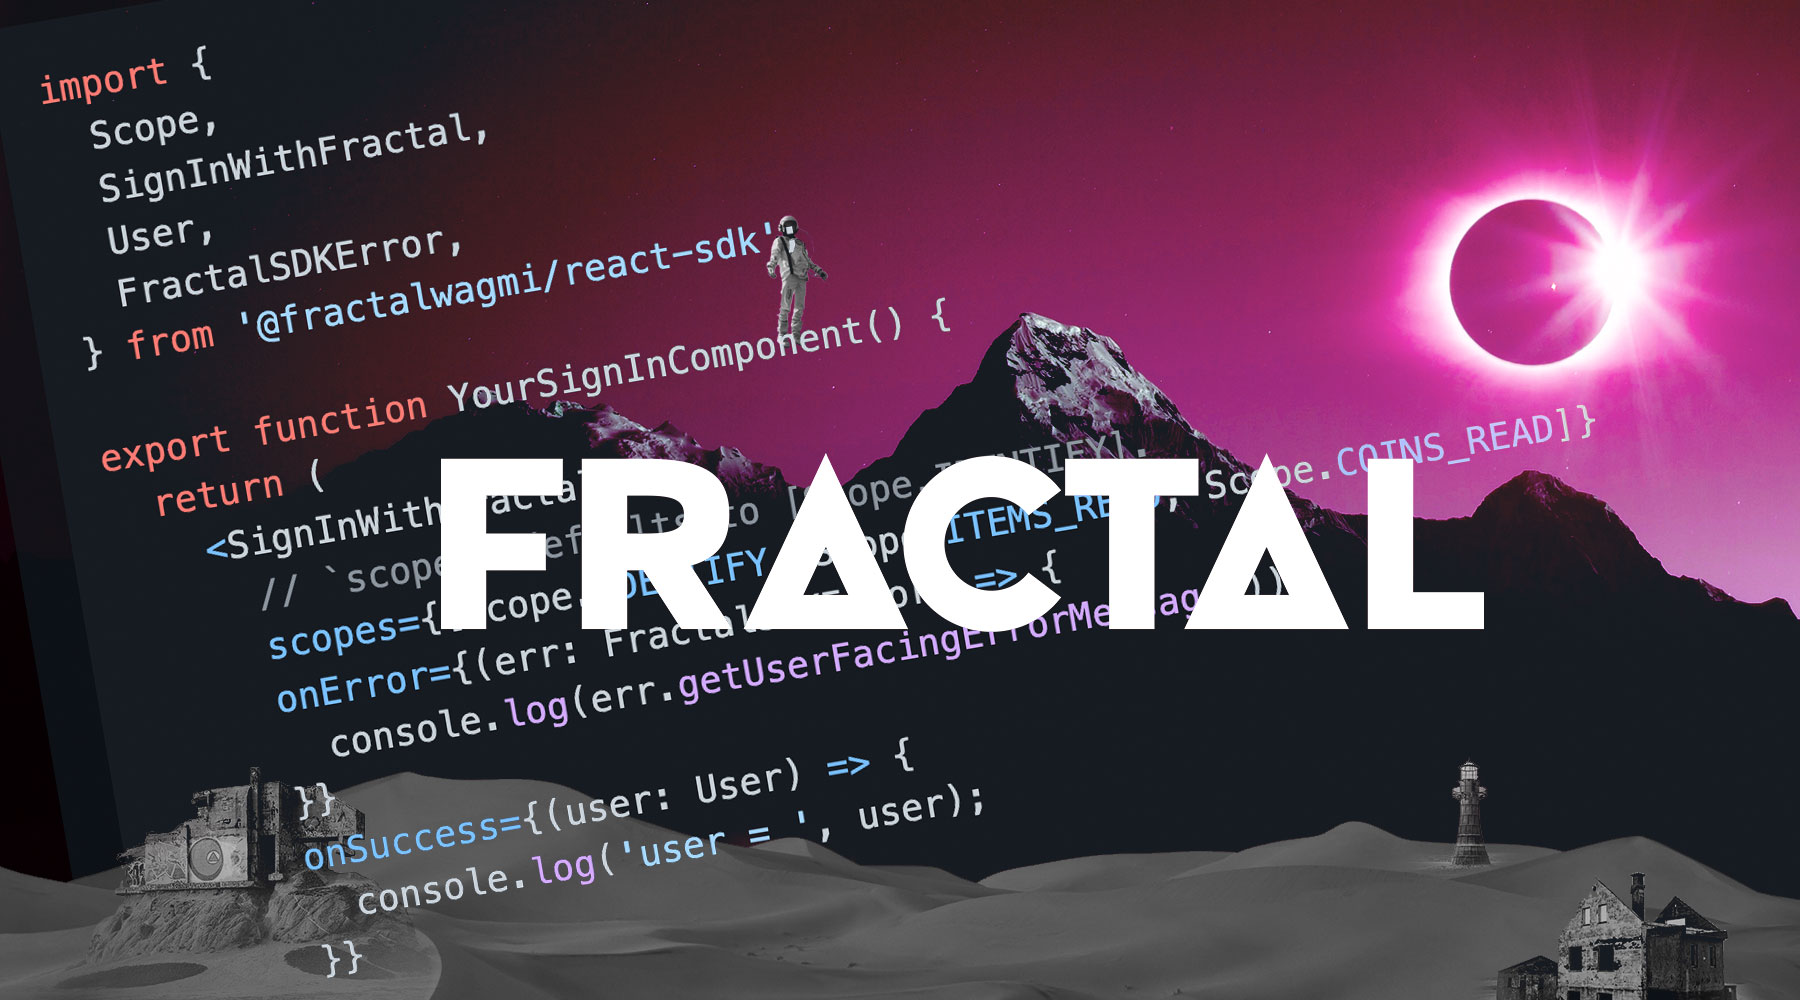 Fractal Announces Fractal Developers Platform